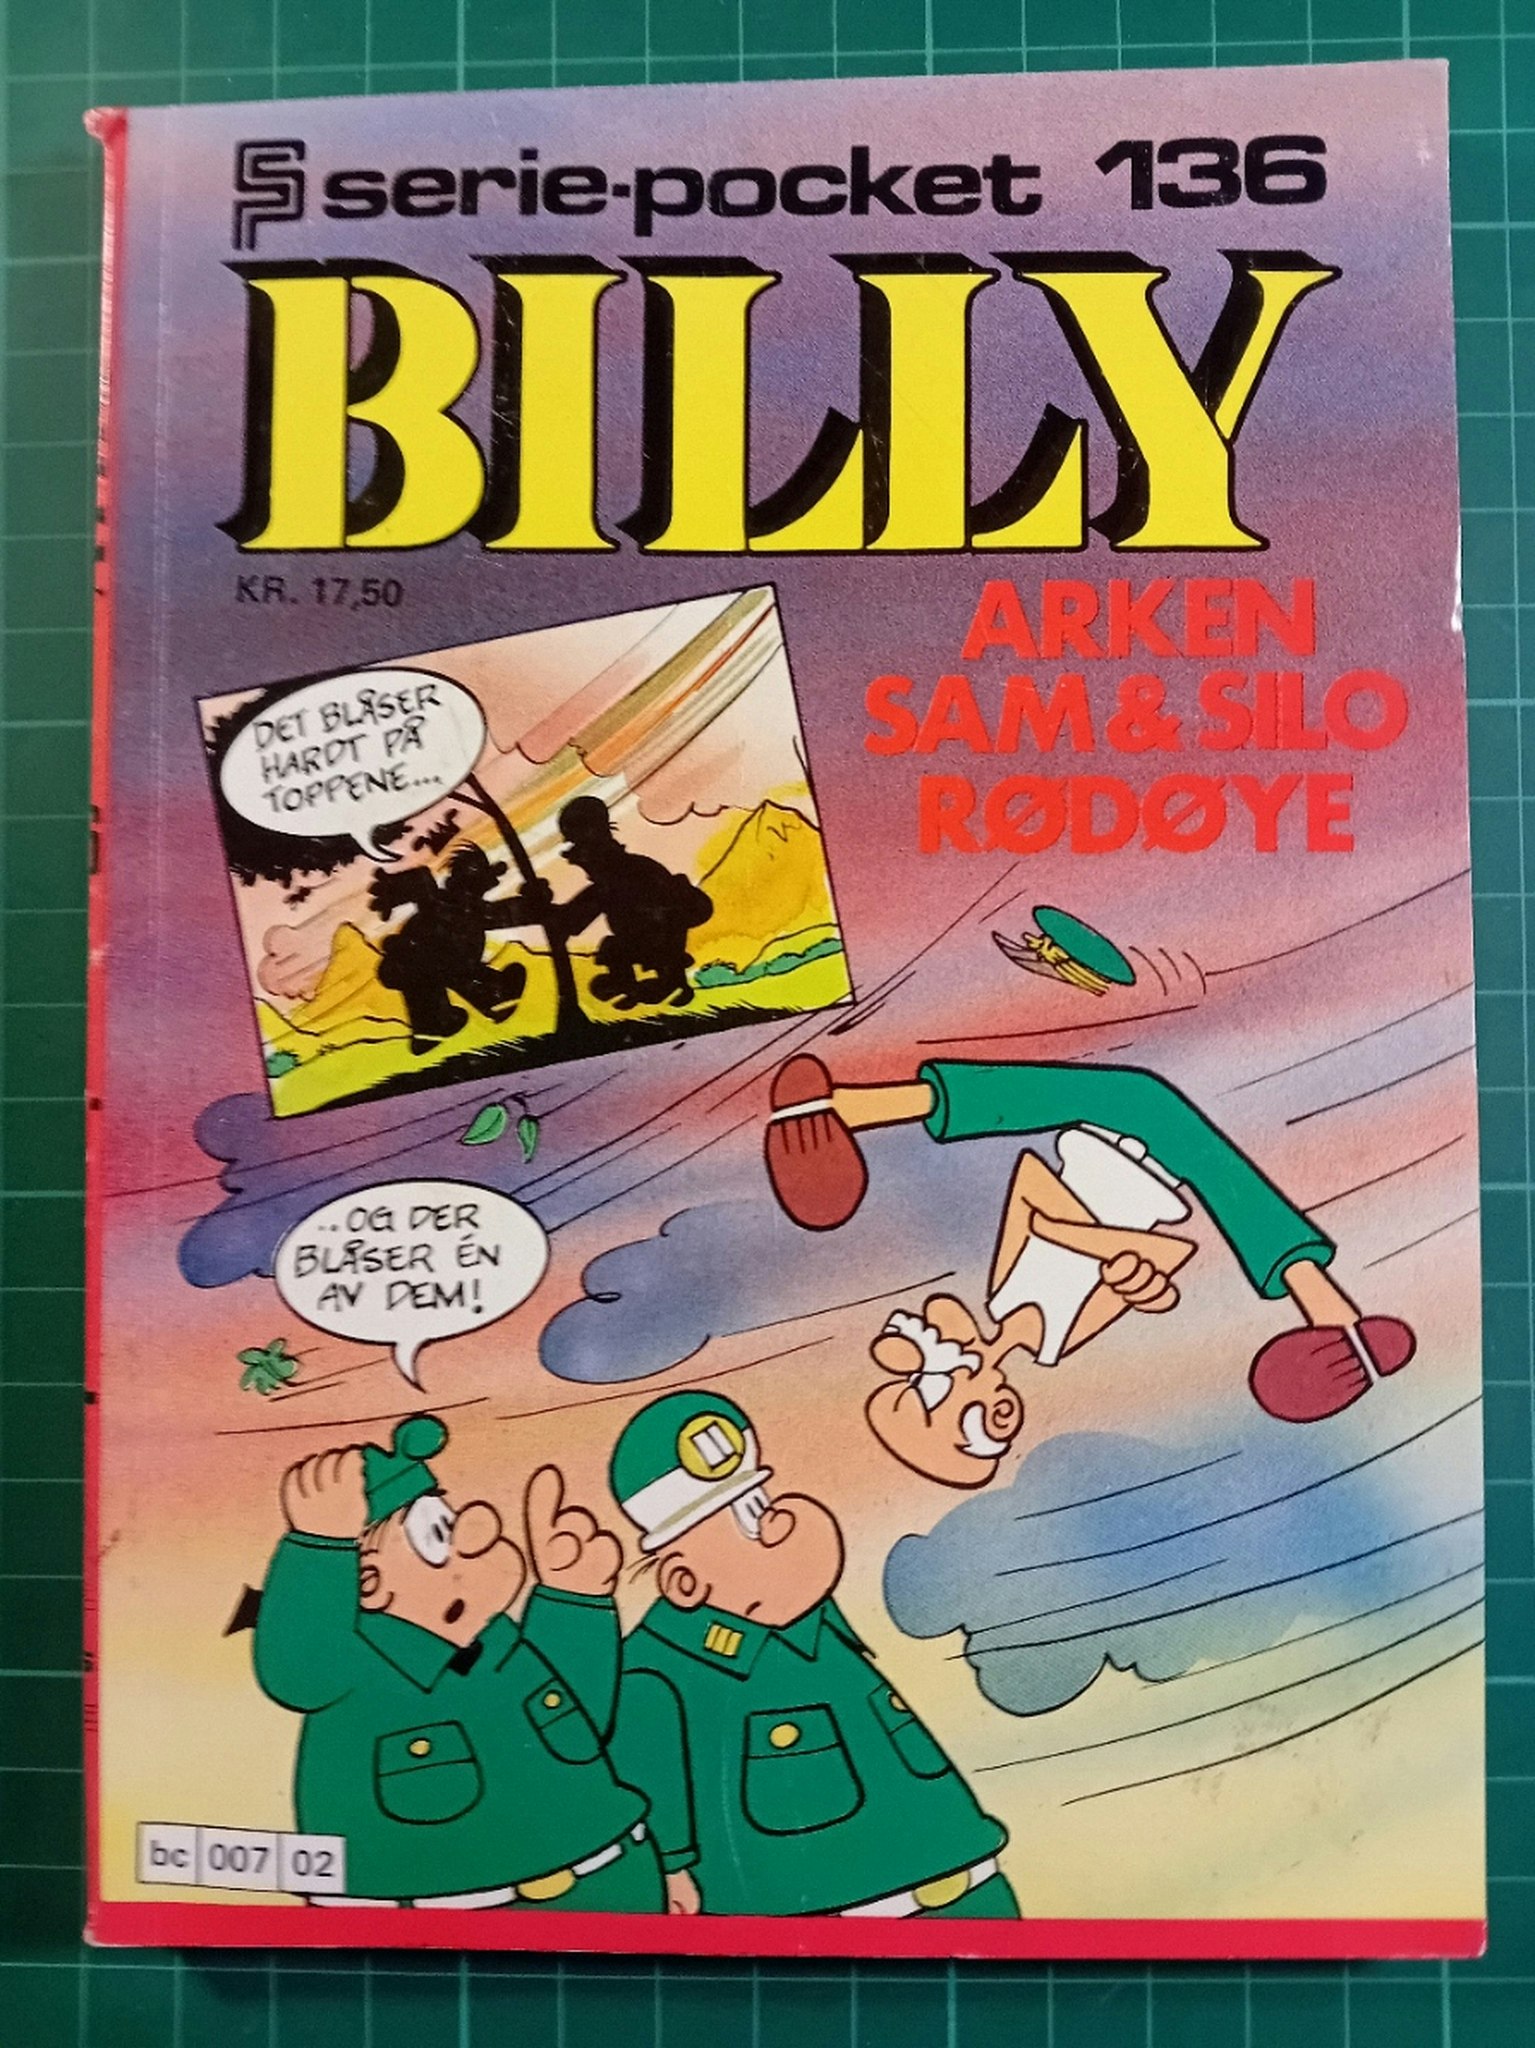 Serie-pocket 136 : Billy